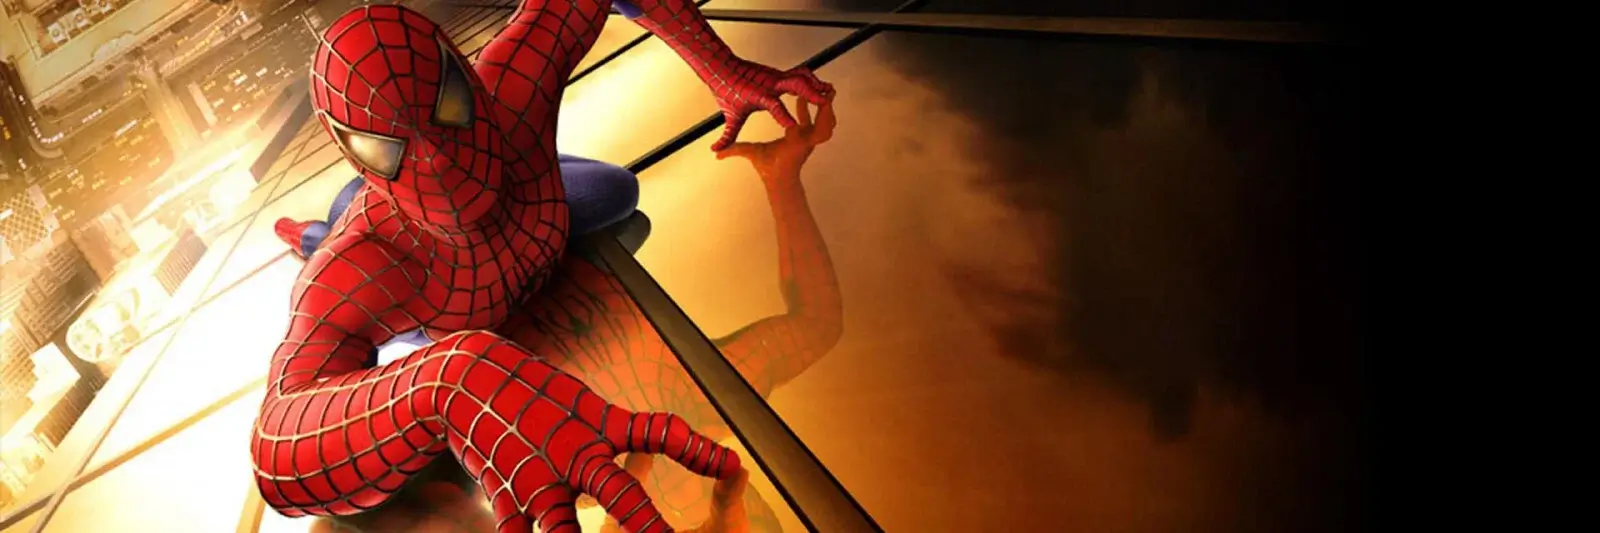 Spider-Man 4K 2002 big poster